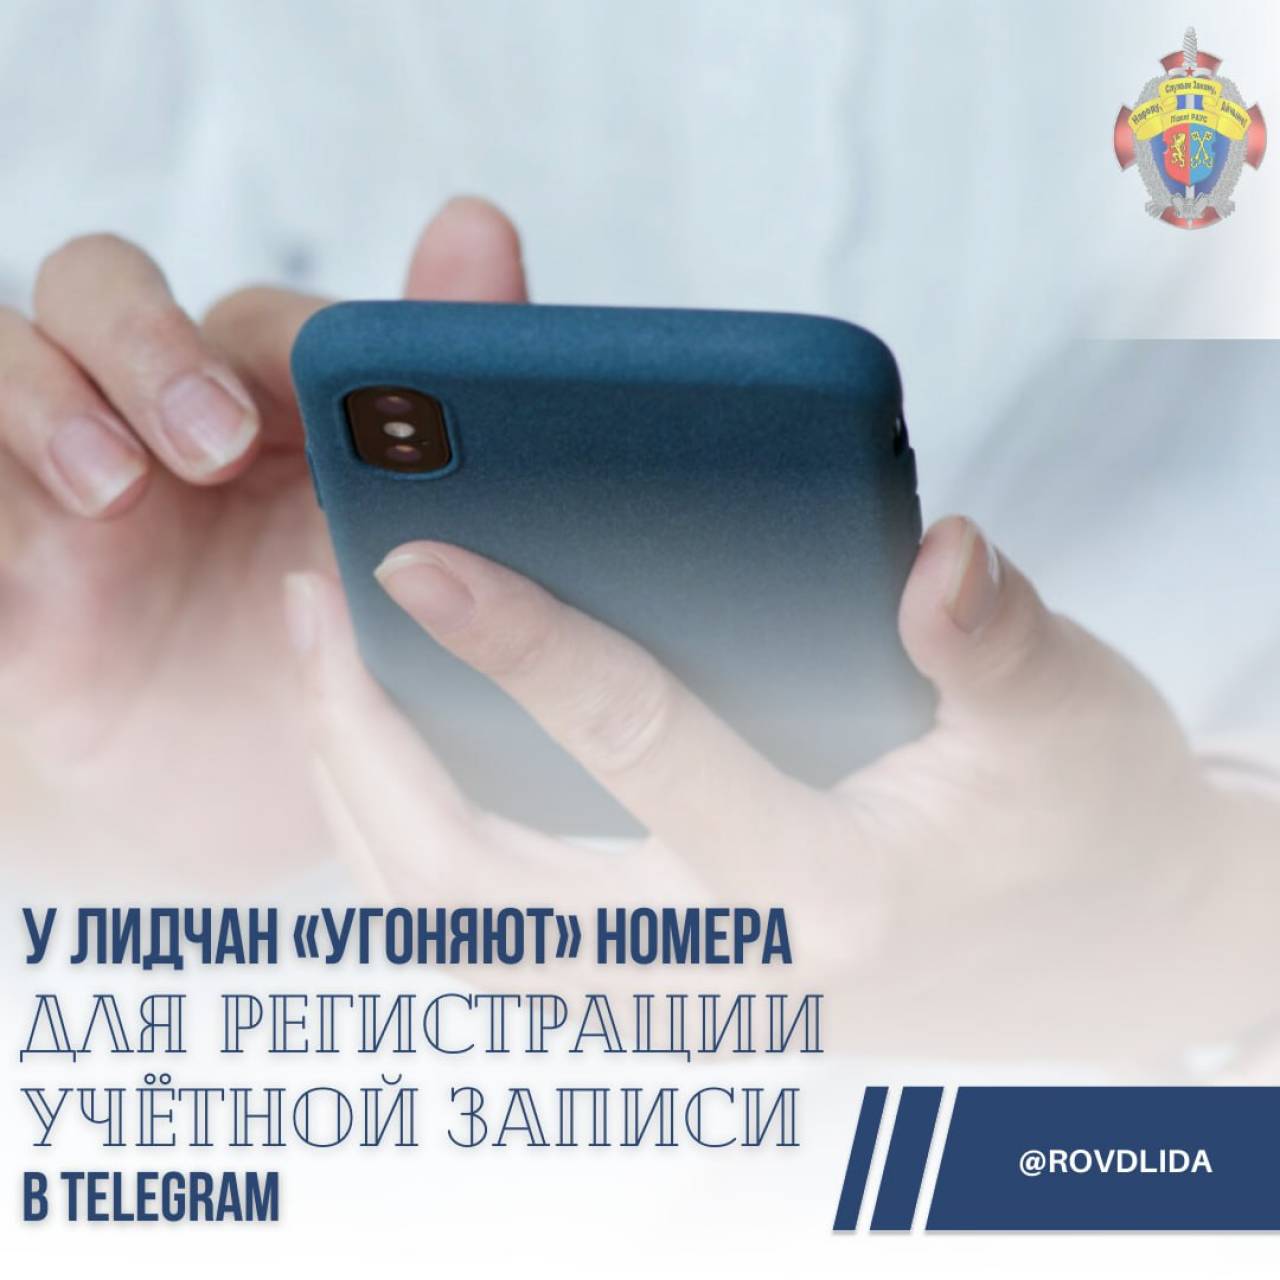 Появляются аккаунты даже у людей с кнопочными телефонами: у лидчан «угоняют» номера для регистрации в Telegram